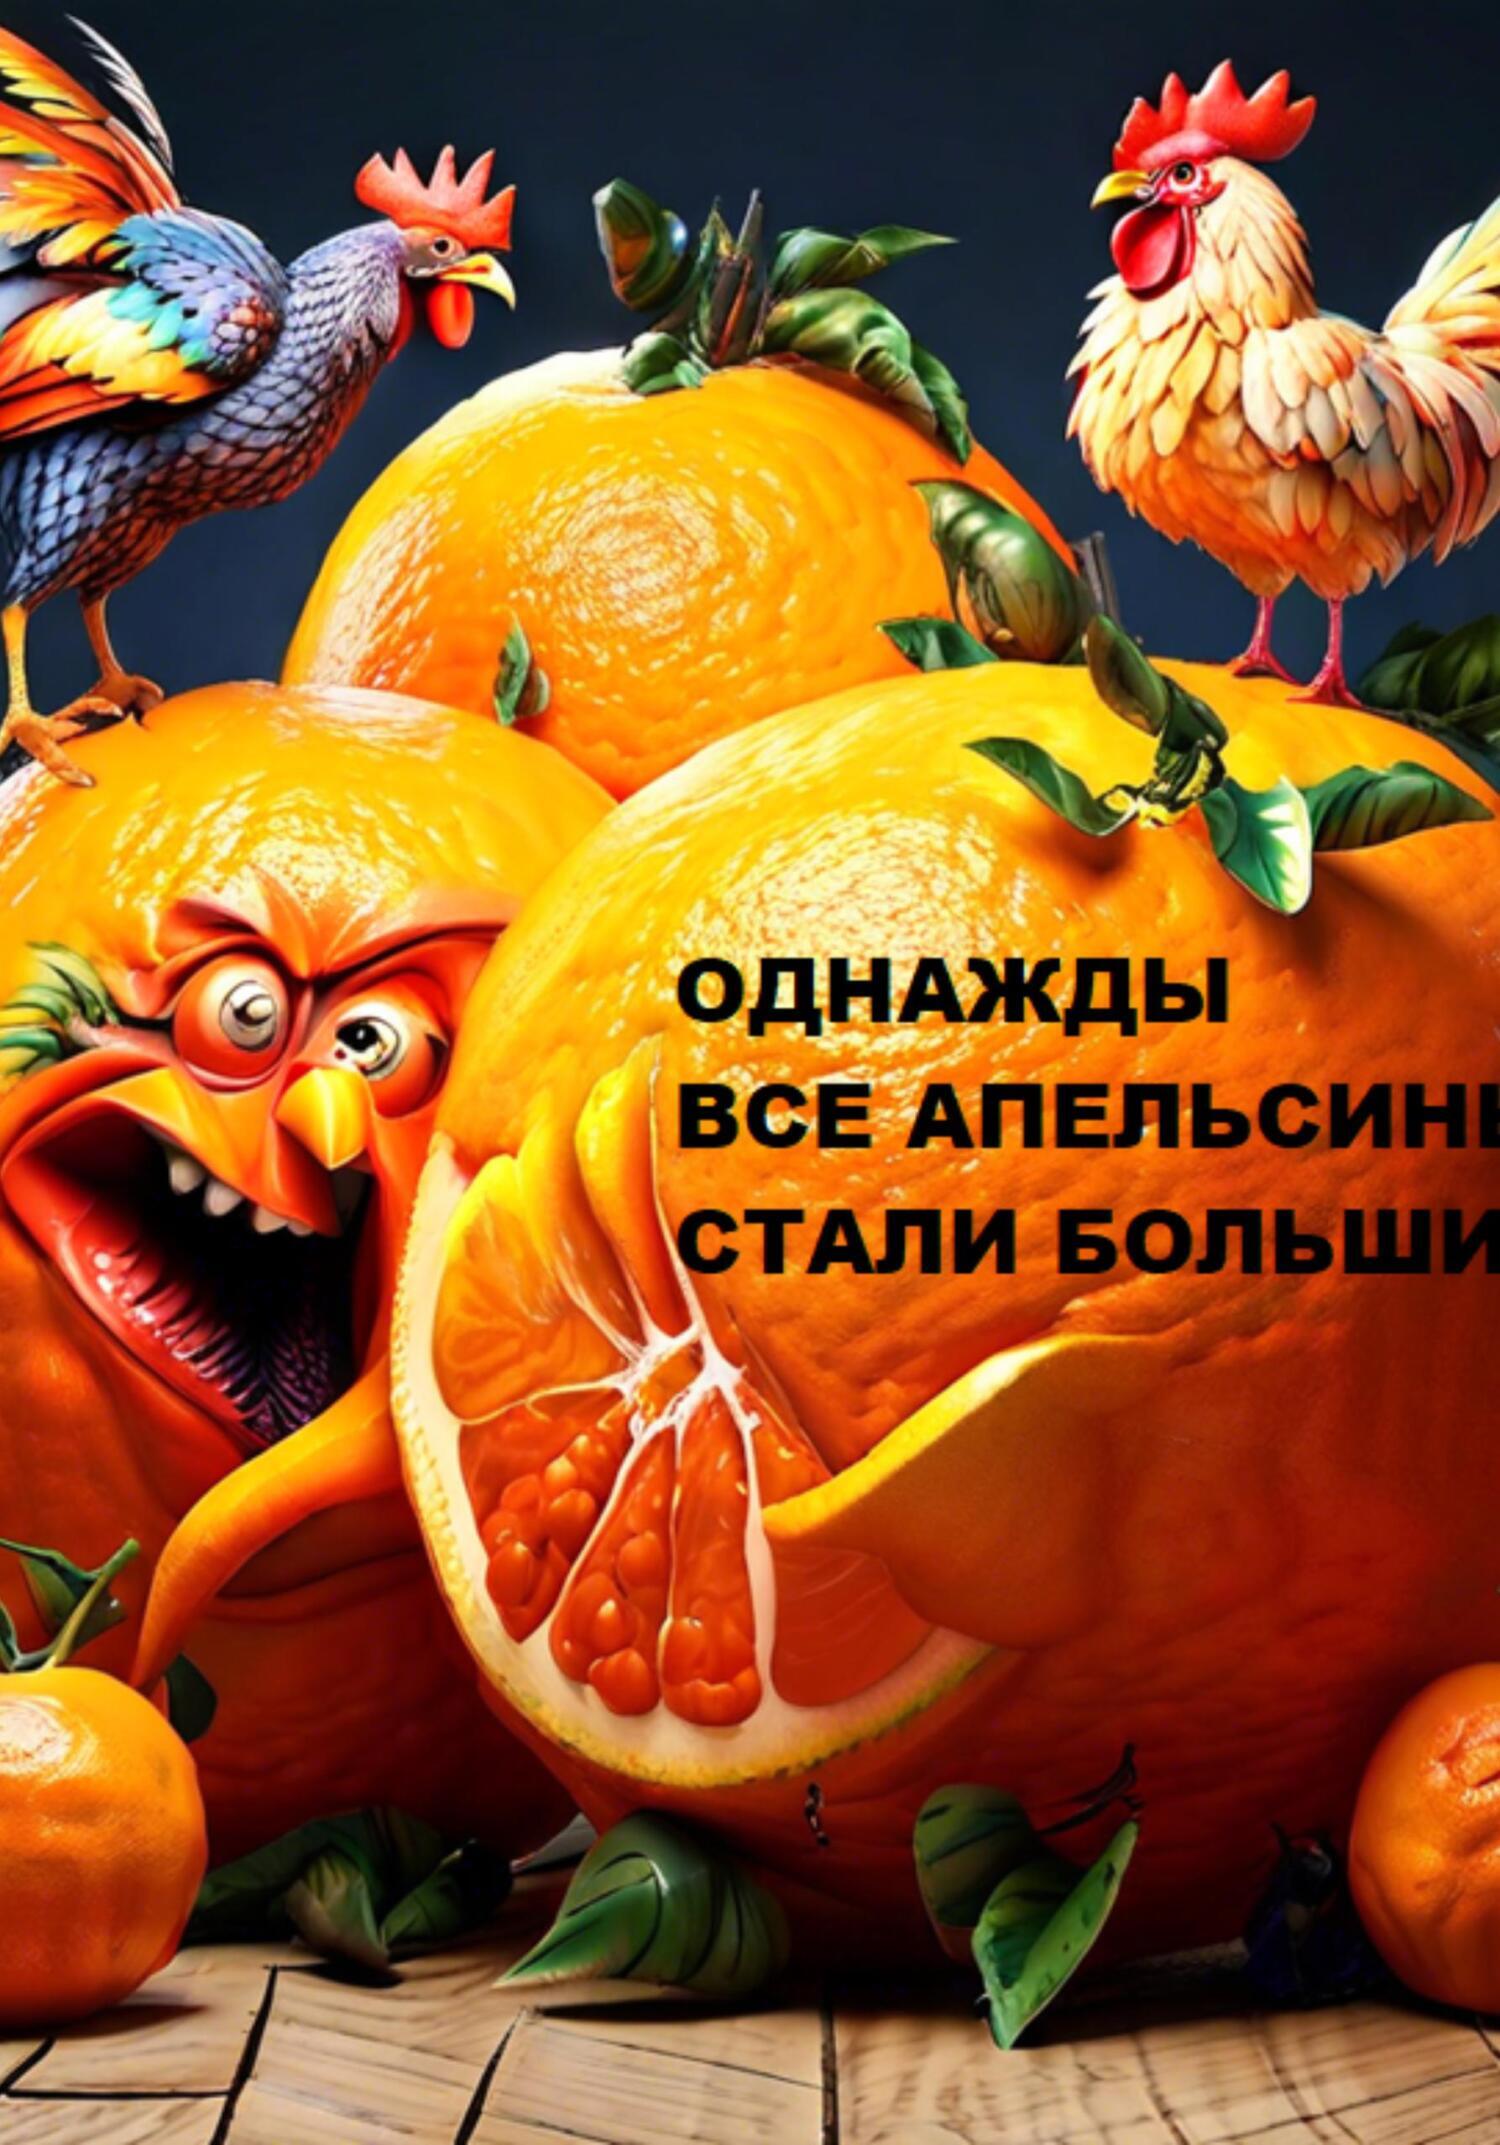 Однажды все апельсины стали большими… (мрачная фантастическая повесть с запахом морали и кусочками нравственности)